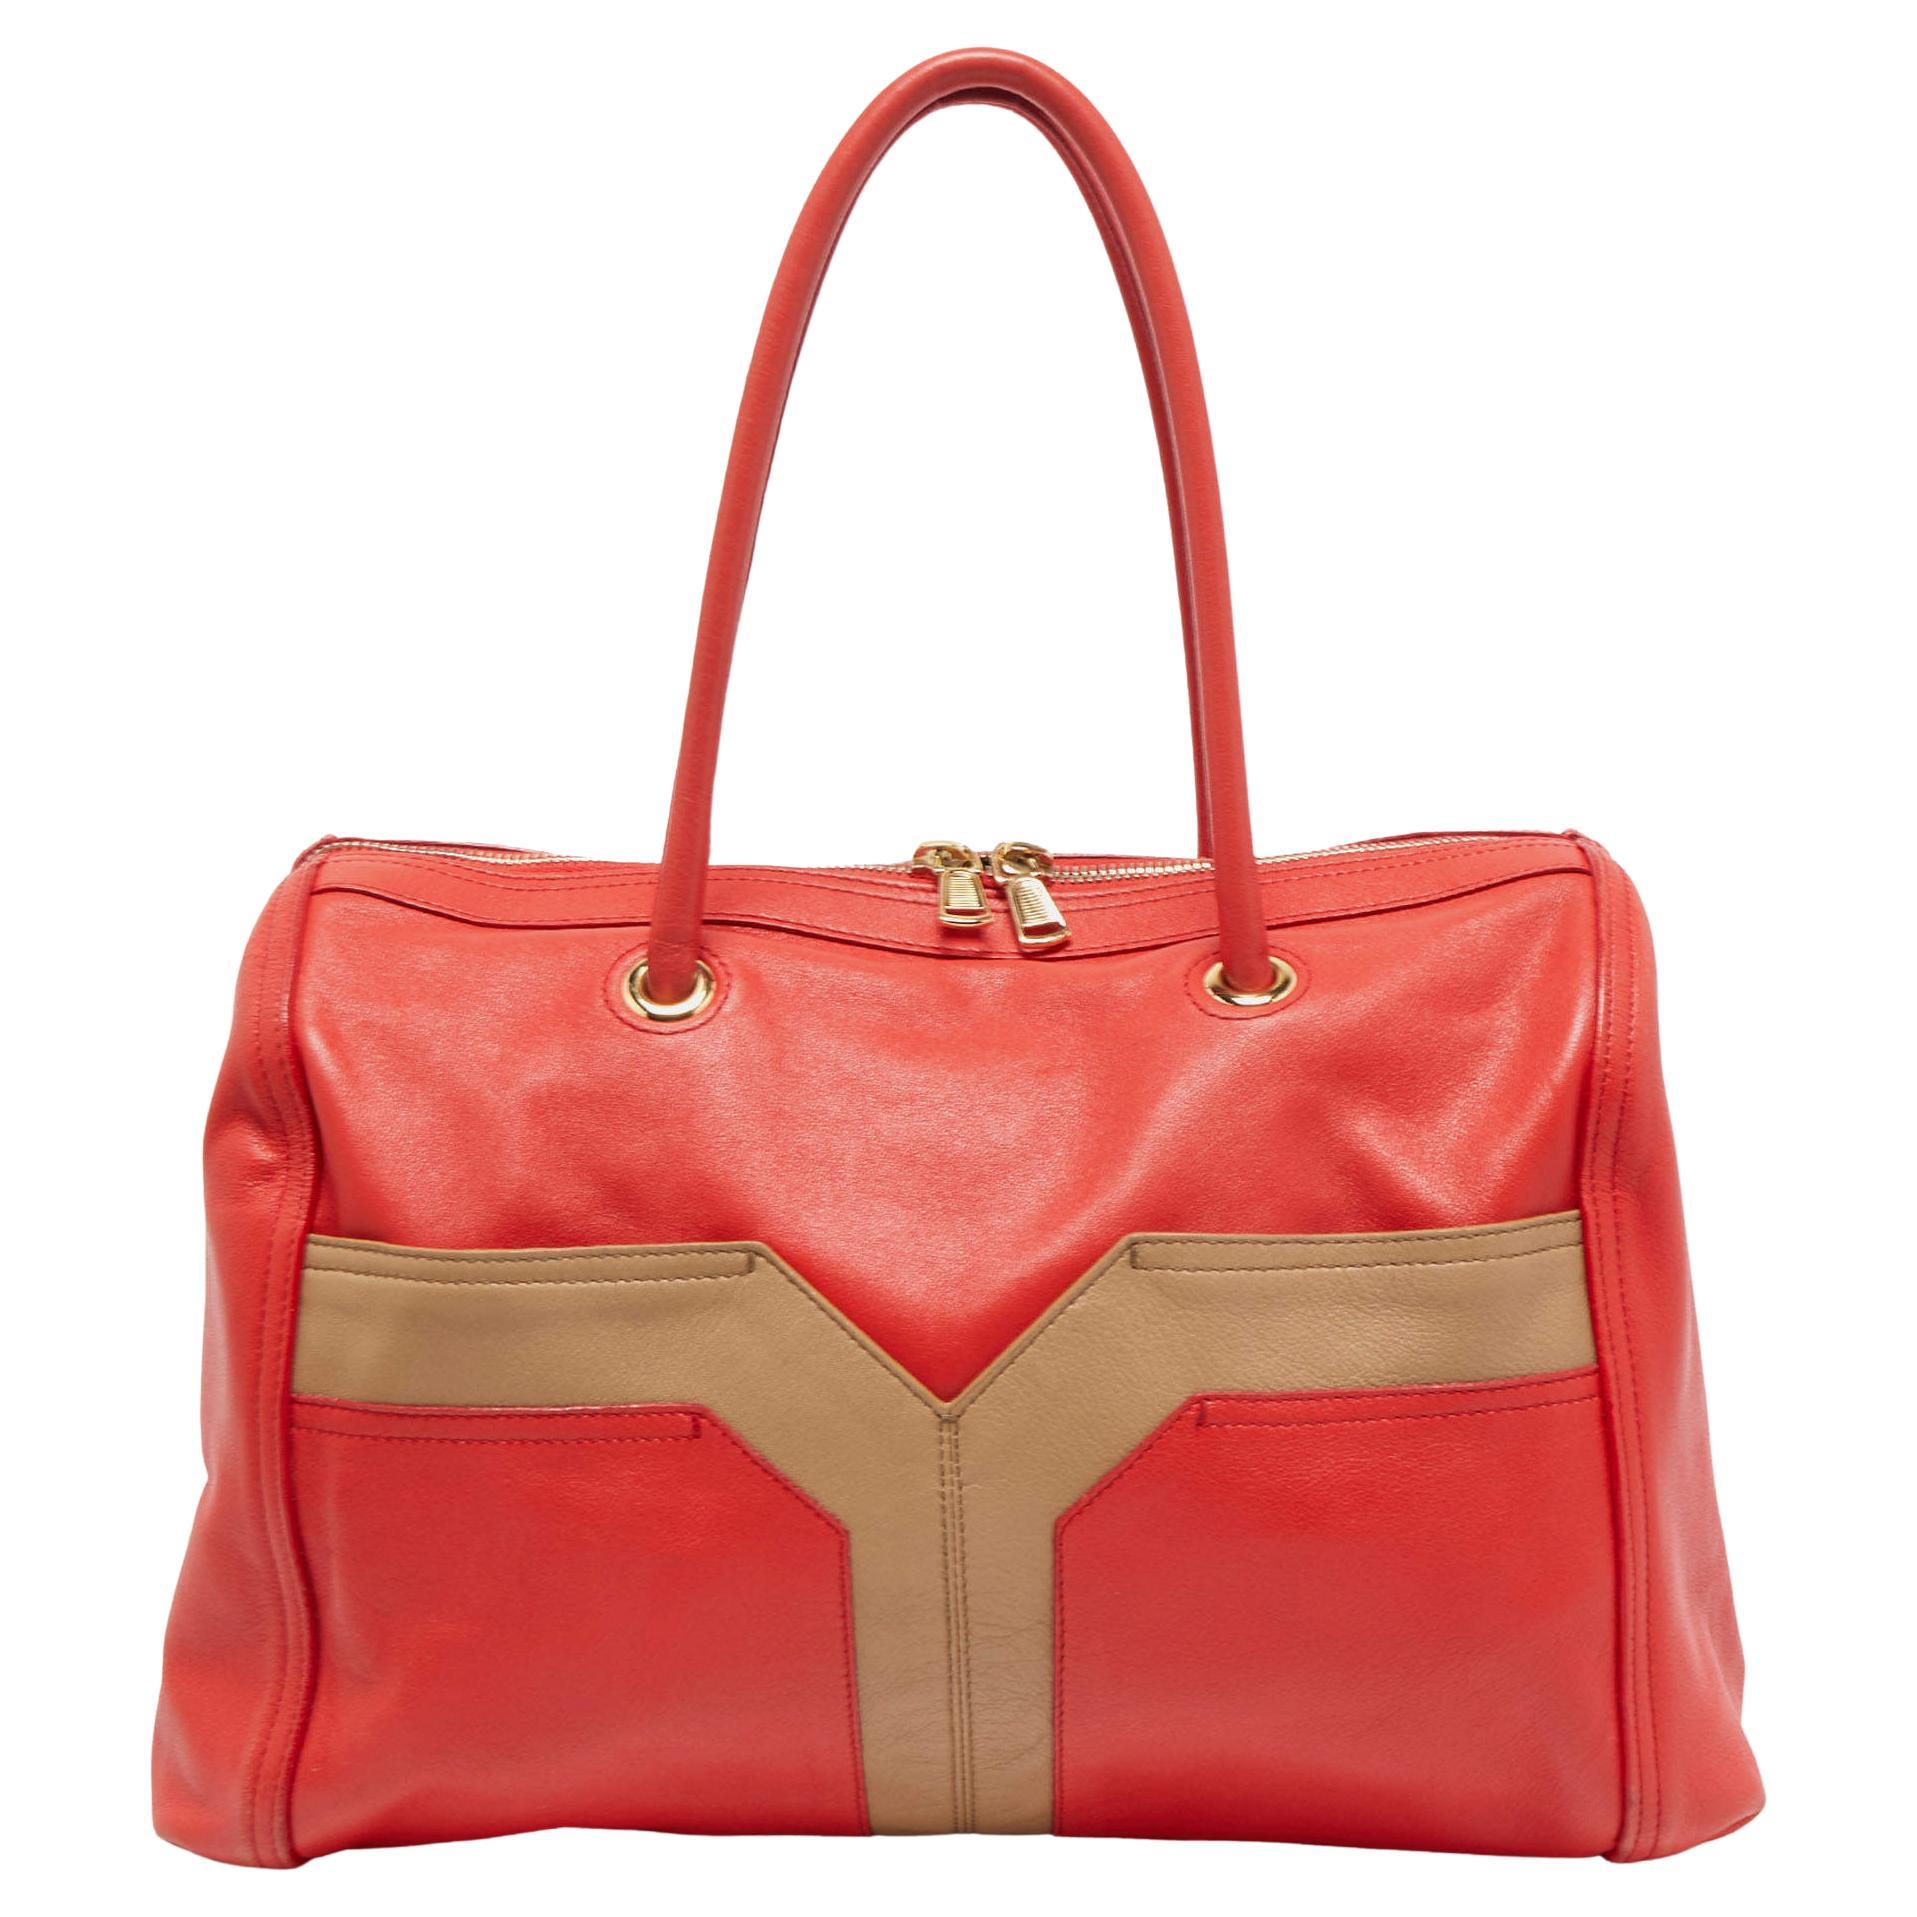 Travel Bags - Discover Saint Laurent Sale Selection Online - Baldachim